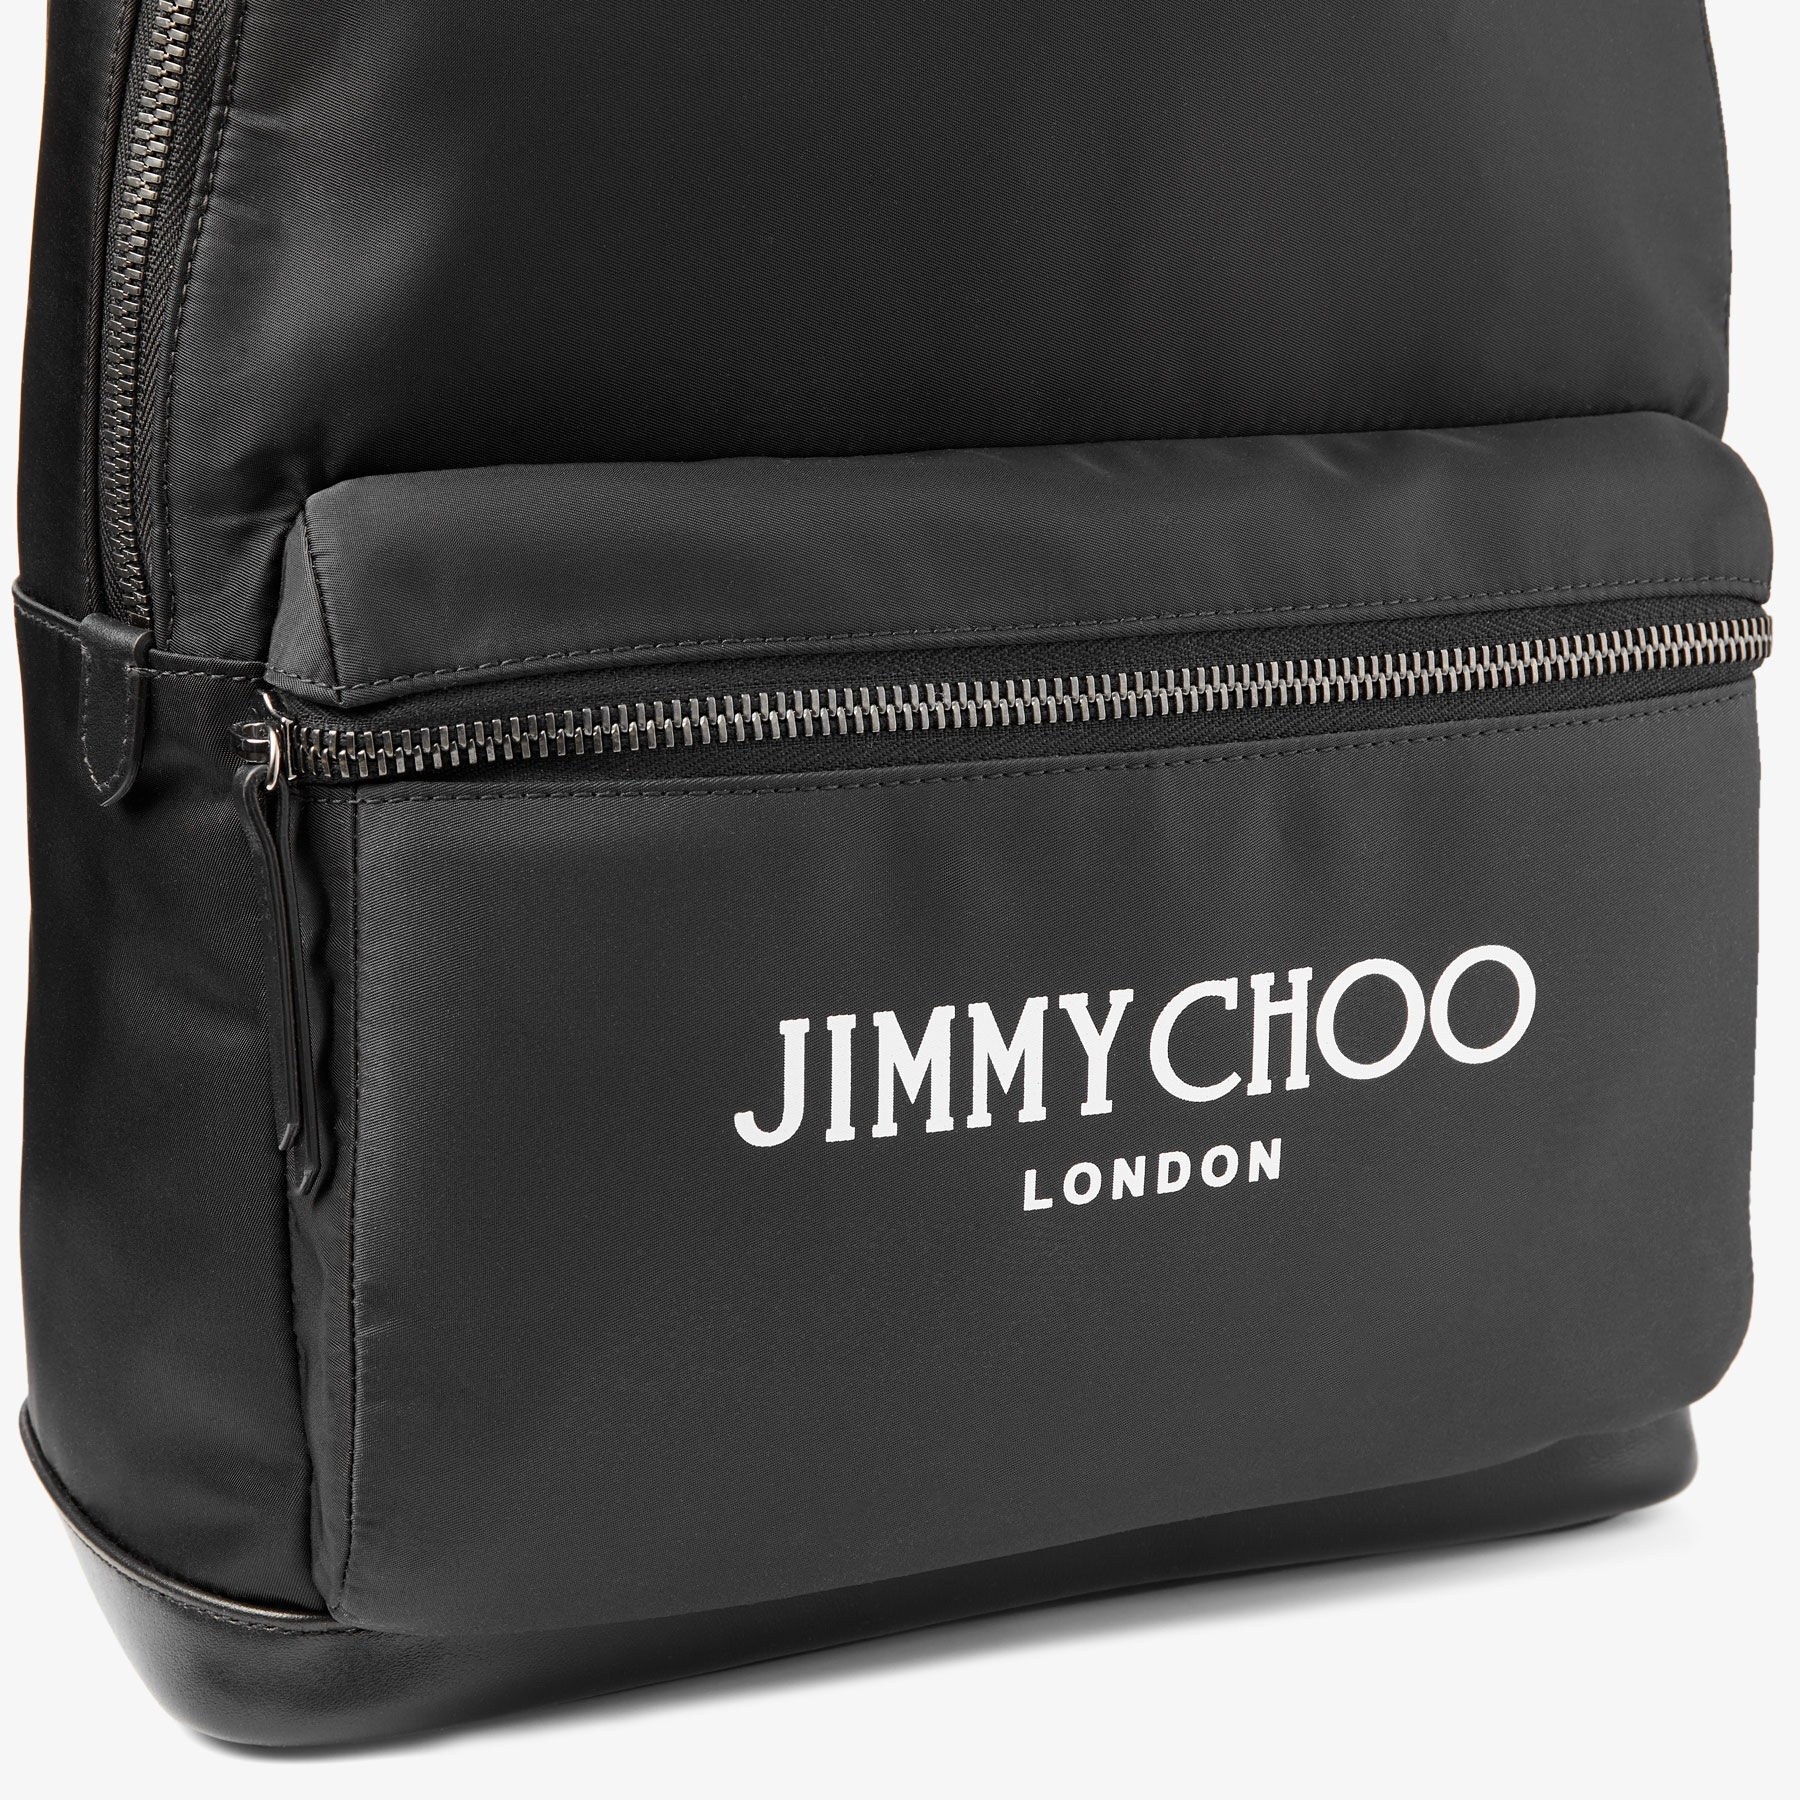 Wilmer
Black Nylon Backpack with Jimmy Choo Logo - 3